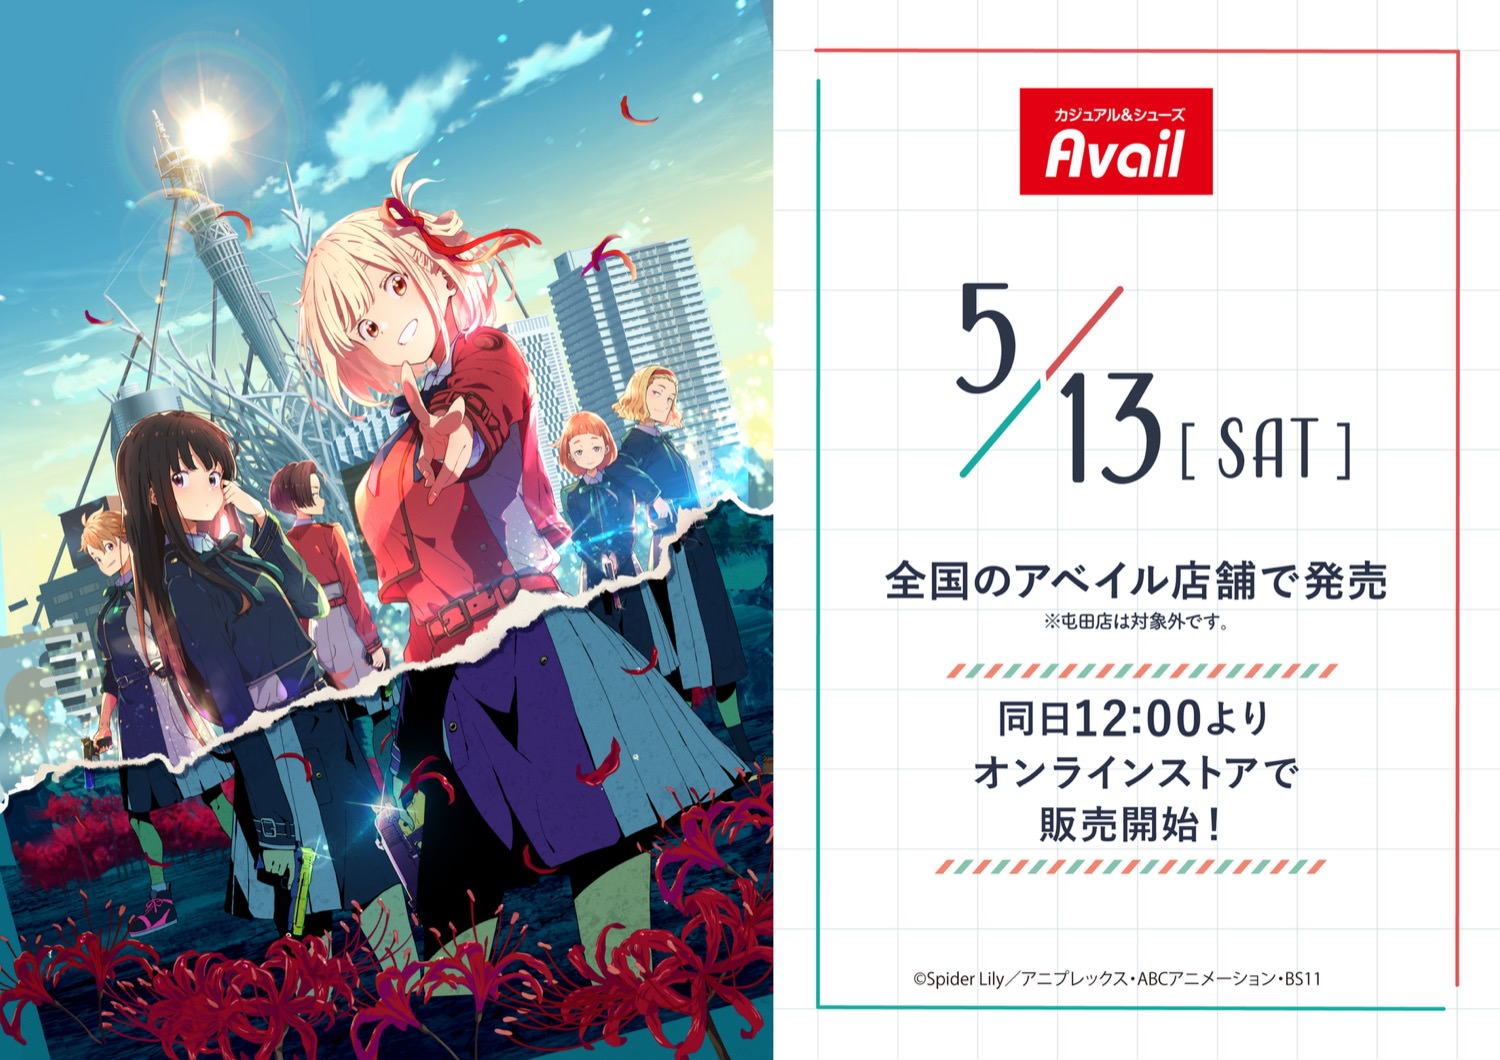 リコリス・リコイル × アベイル全国 5月13日よりコラボグッズ発売!